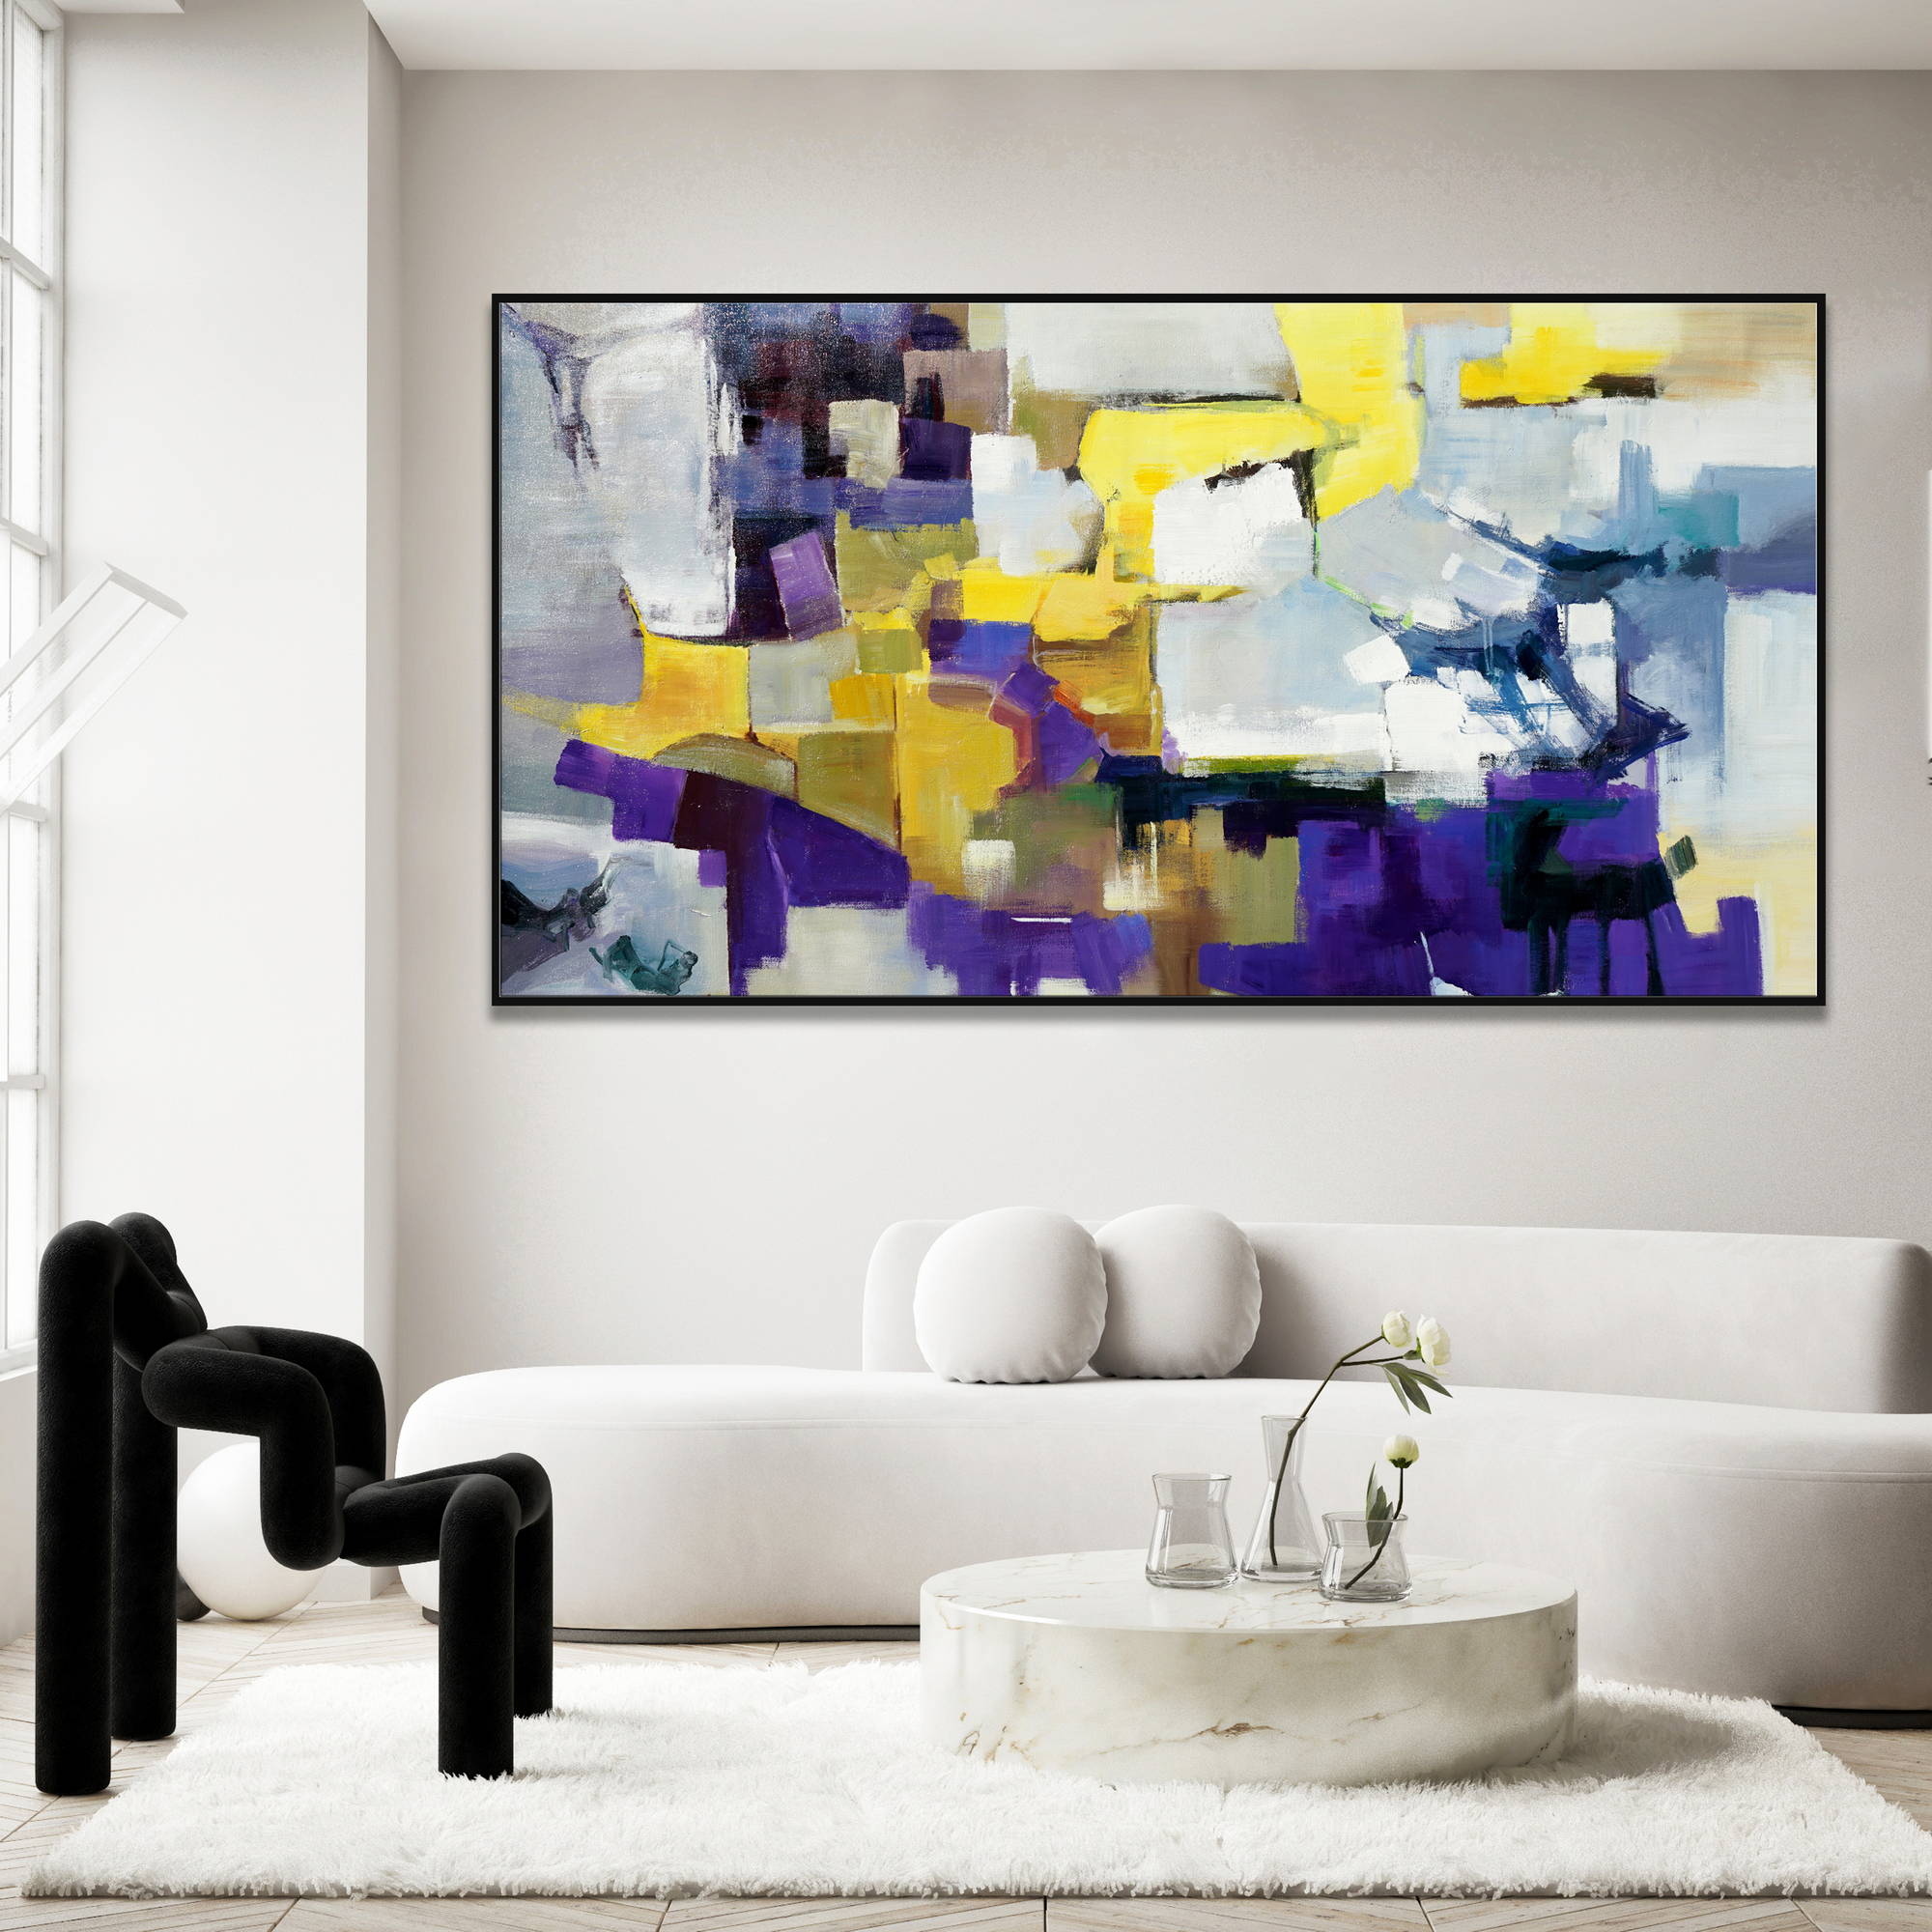 Dipinto astratto con elementi geometrici colorati, prevalenza di giallo e viola